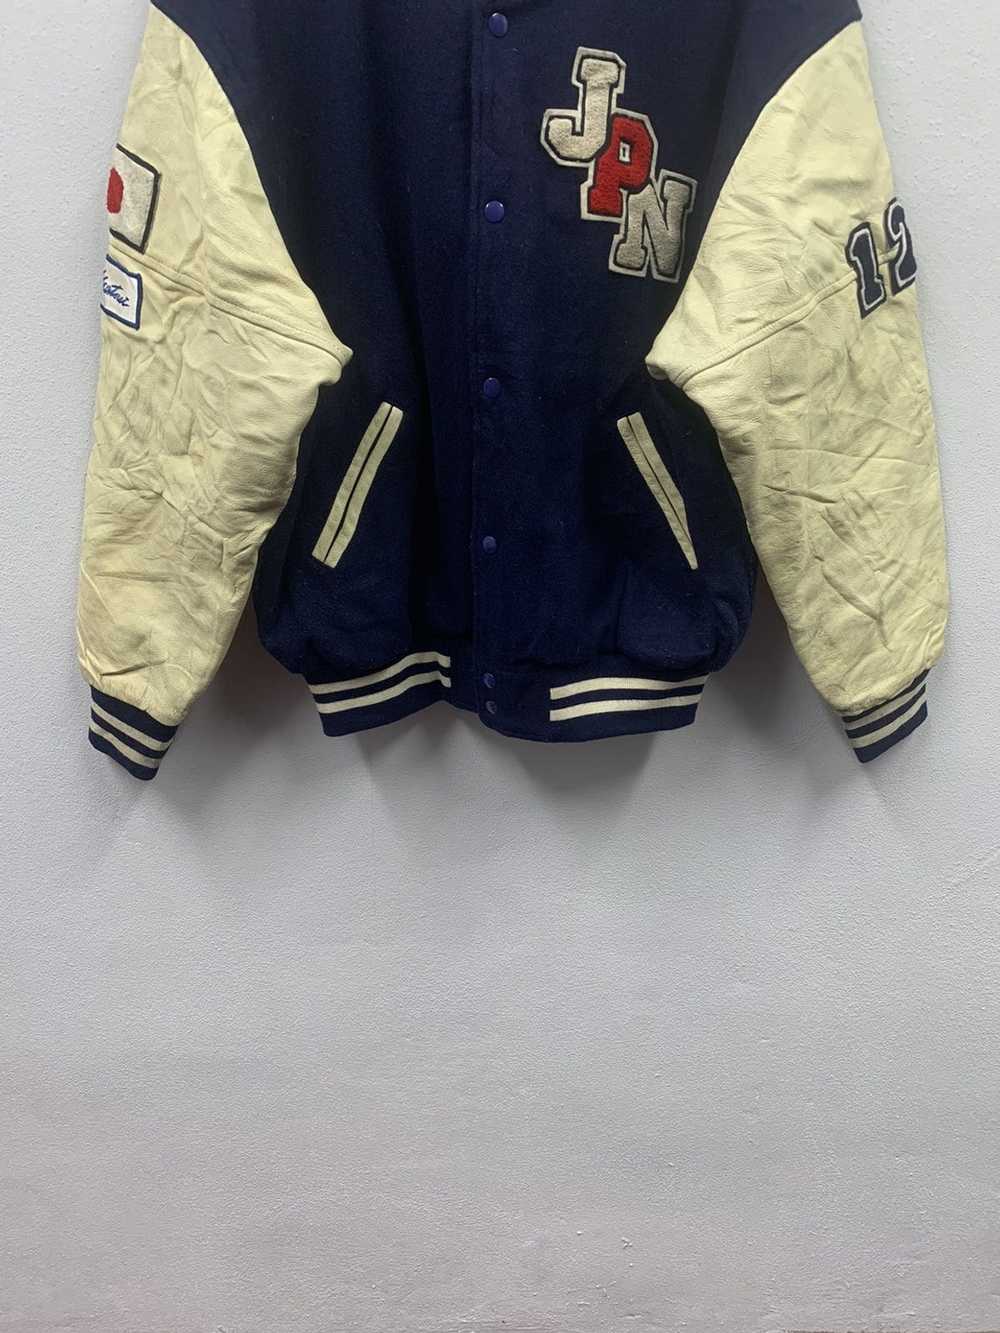 Hockey × Leather Jacket × Varsity Jacket Vintage … - image 9